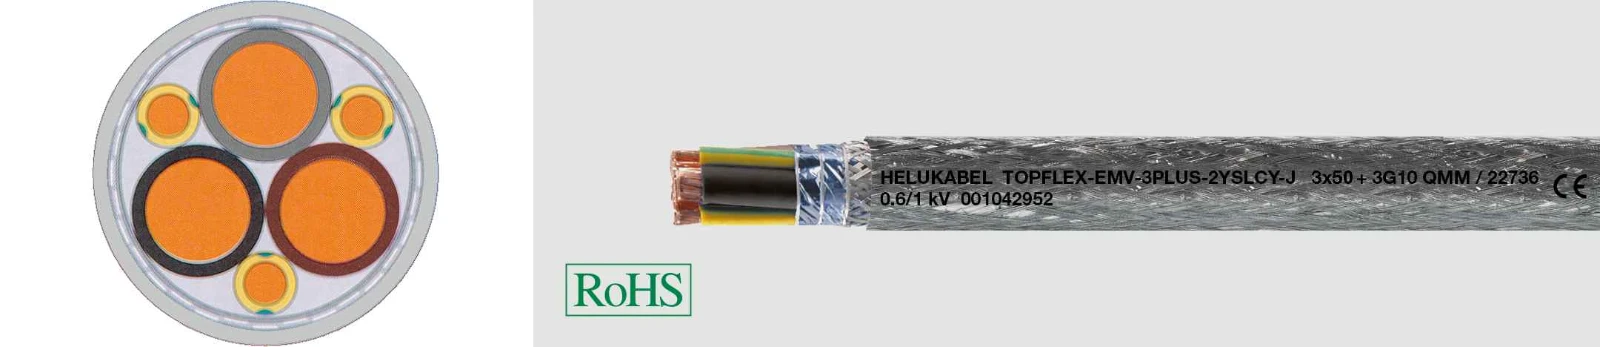 Helukabel Voedingskabel >= 1 kV, voor vaste aanleg TOPFLEX®-EMV-3 PLUS 2YSLCY-J